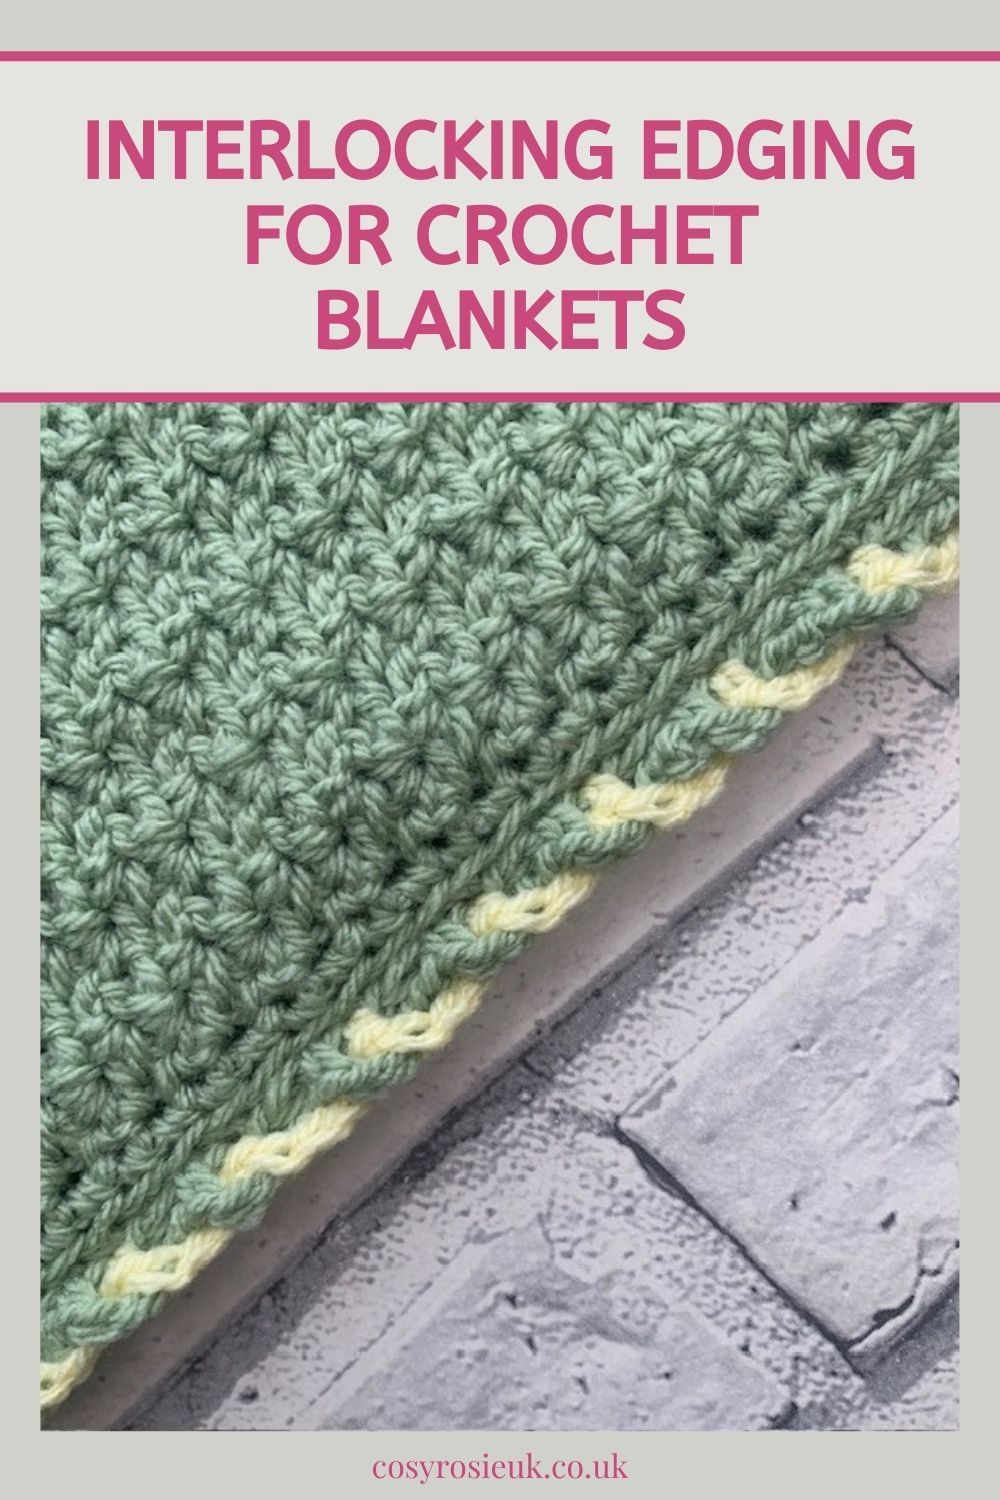 Interlocking Edging for crochet blankets